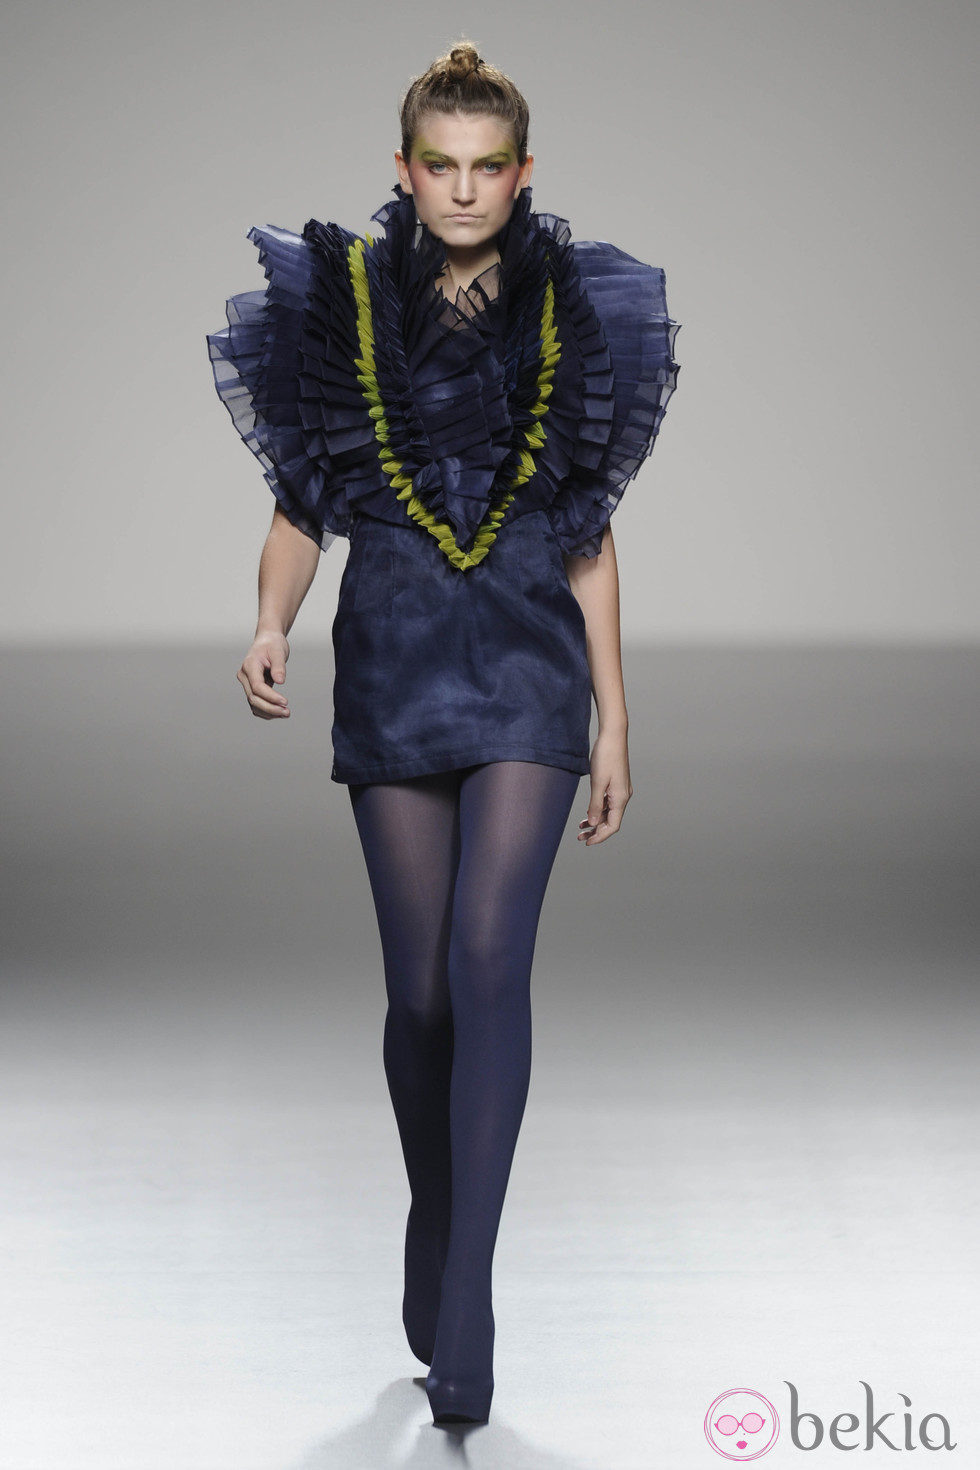 Vestido azul Klein corto y medias a juego de la colección primavera/verano 2013 de Eva Soto